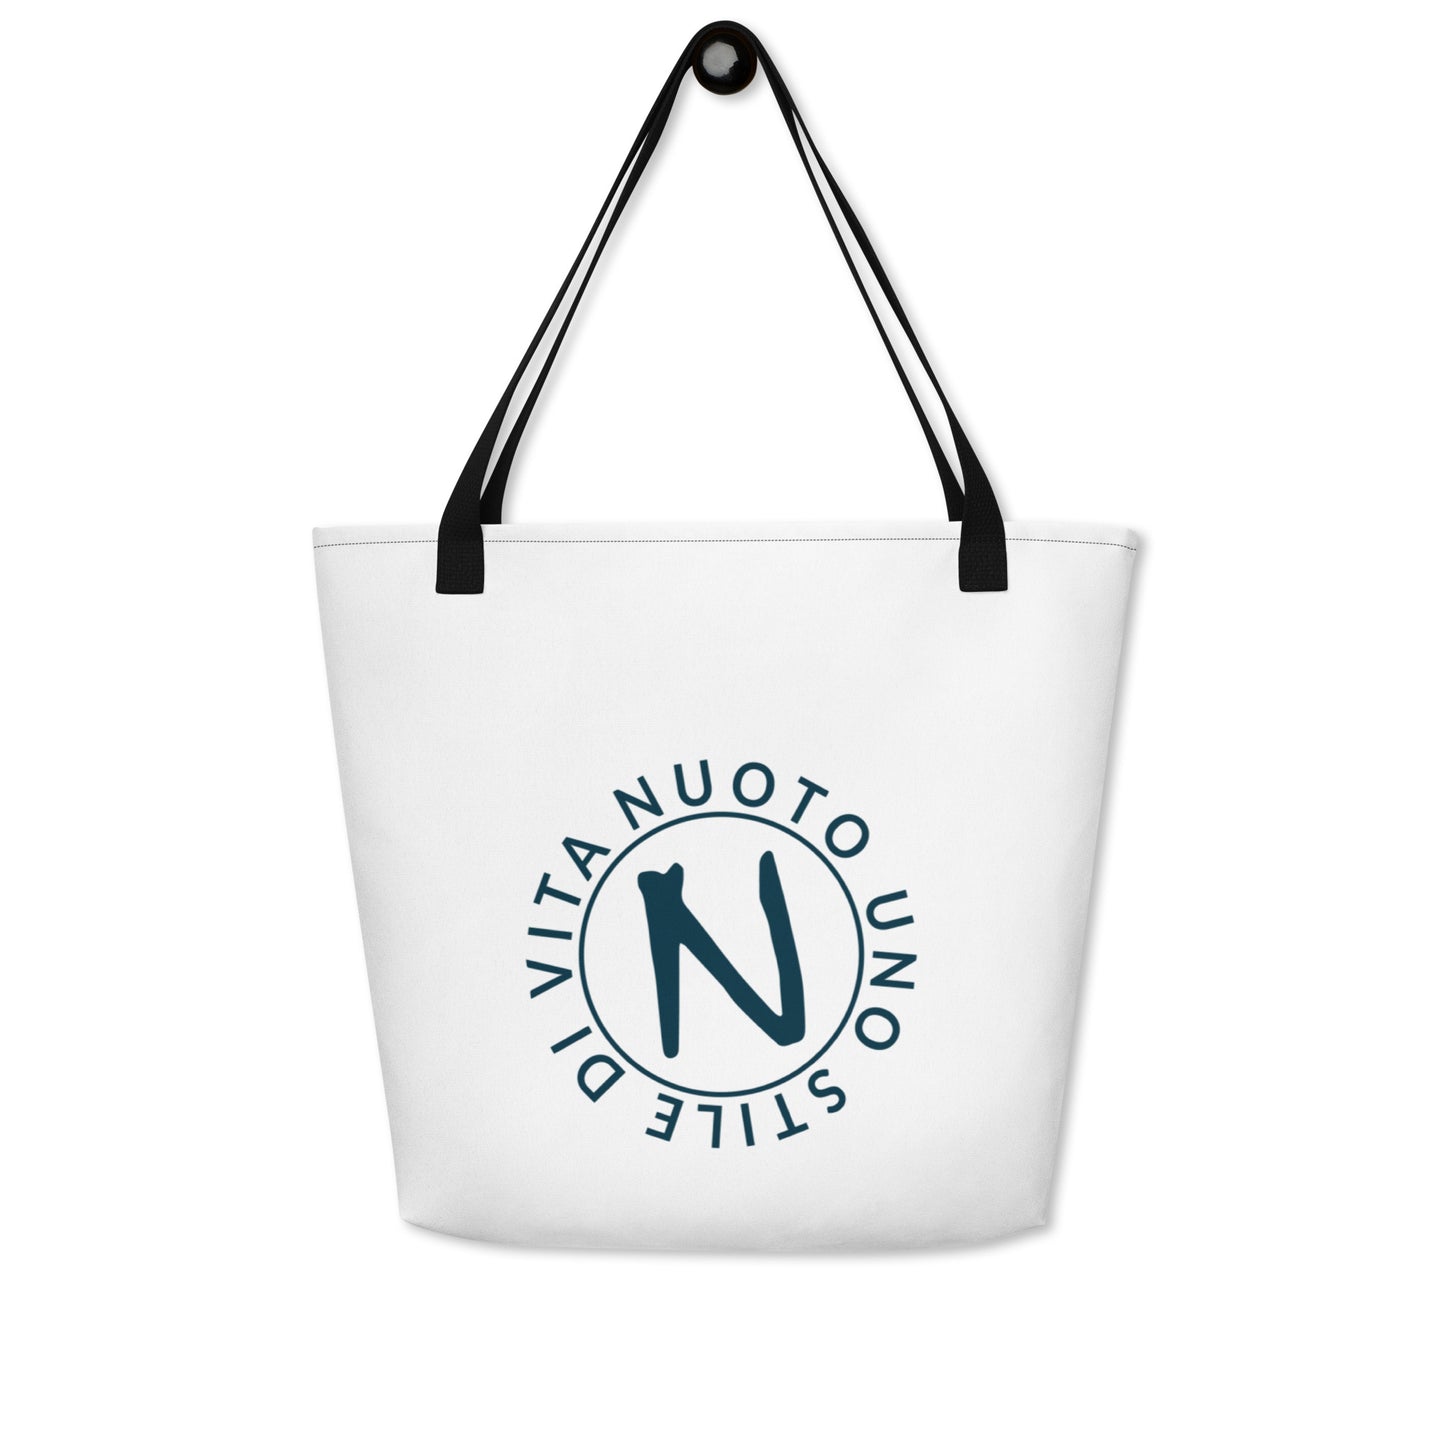 Shopping bag grande - Nuotounostiledivita